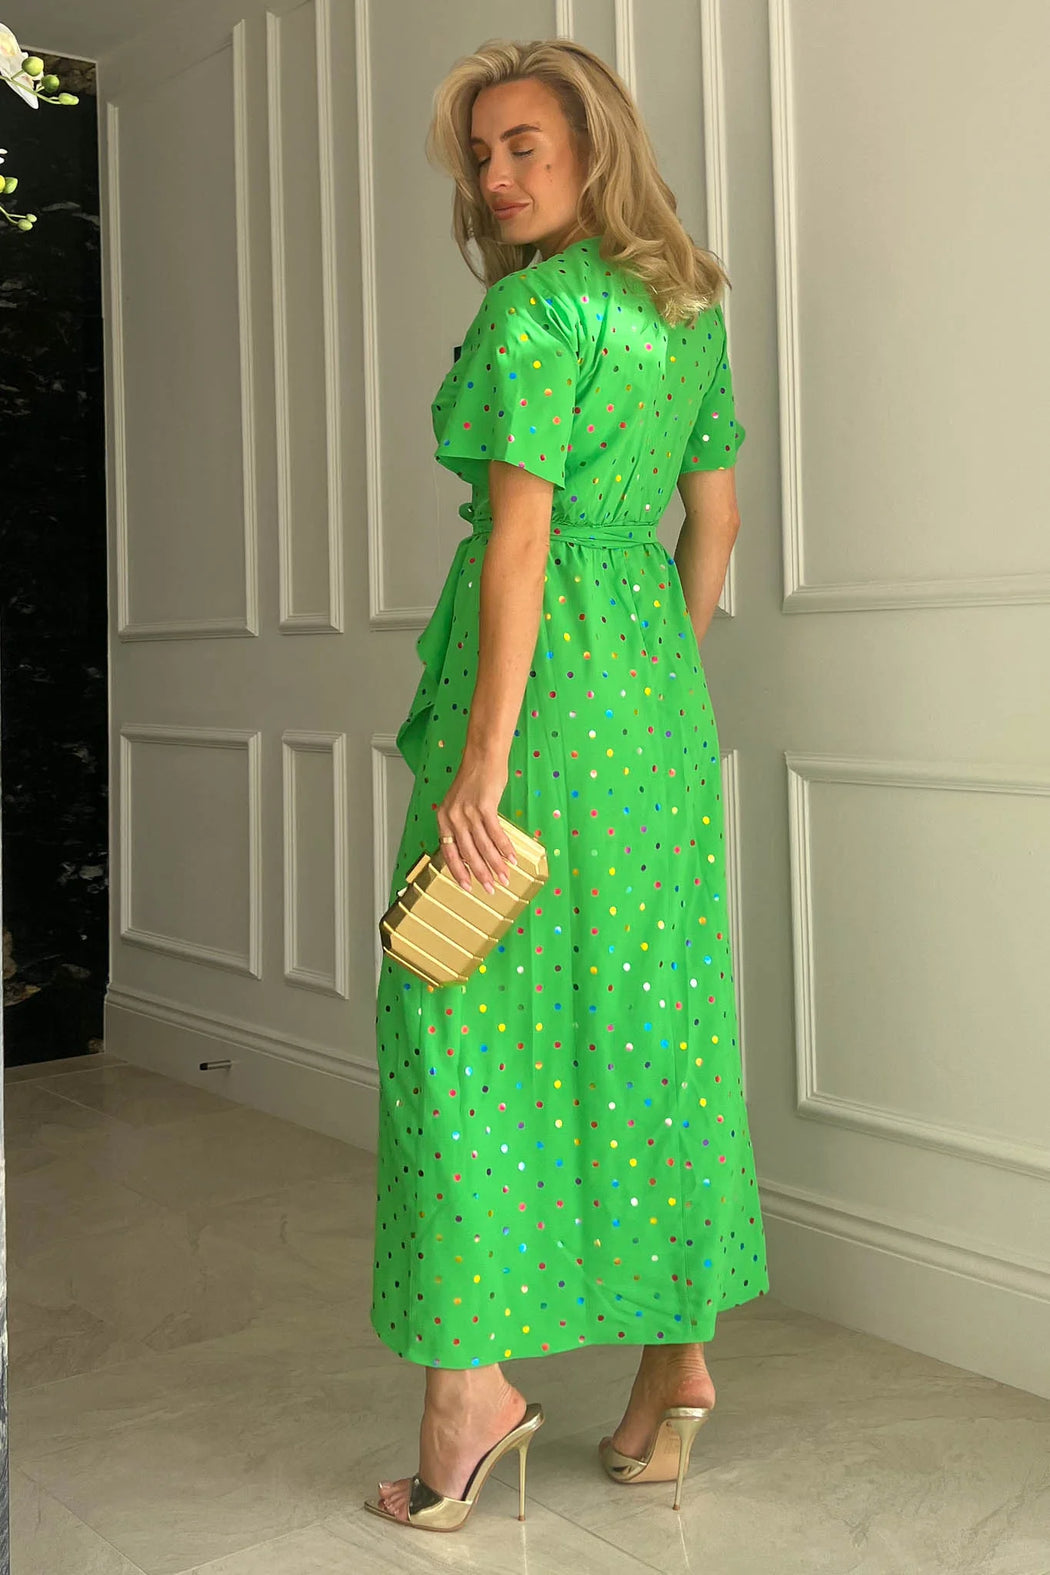 Farrah Green & Multi Colour Foil Split Hem Frill Detail Maxi Dress